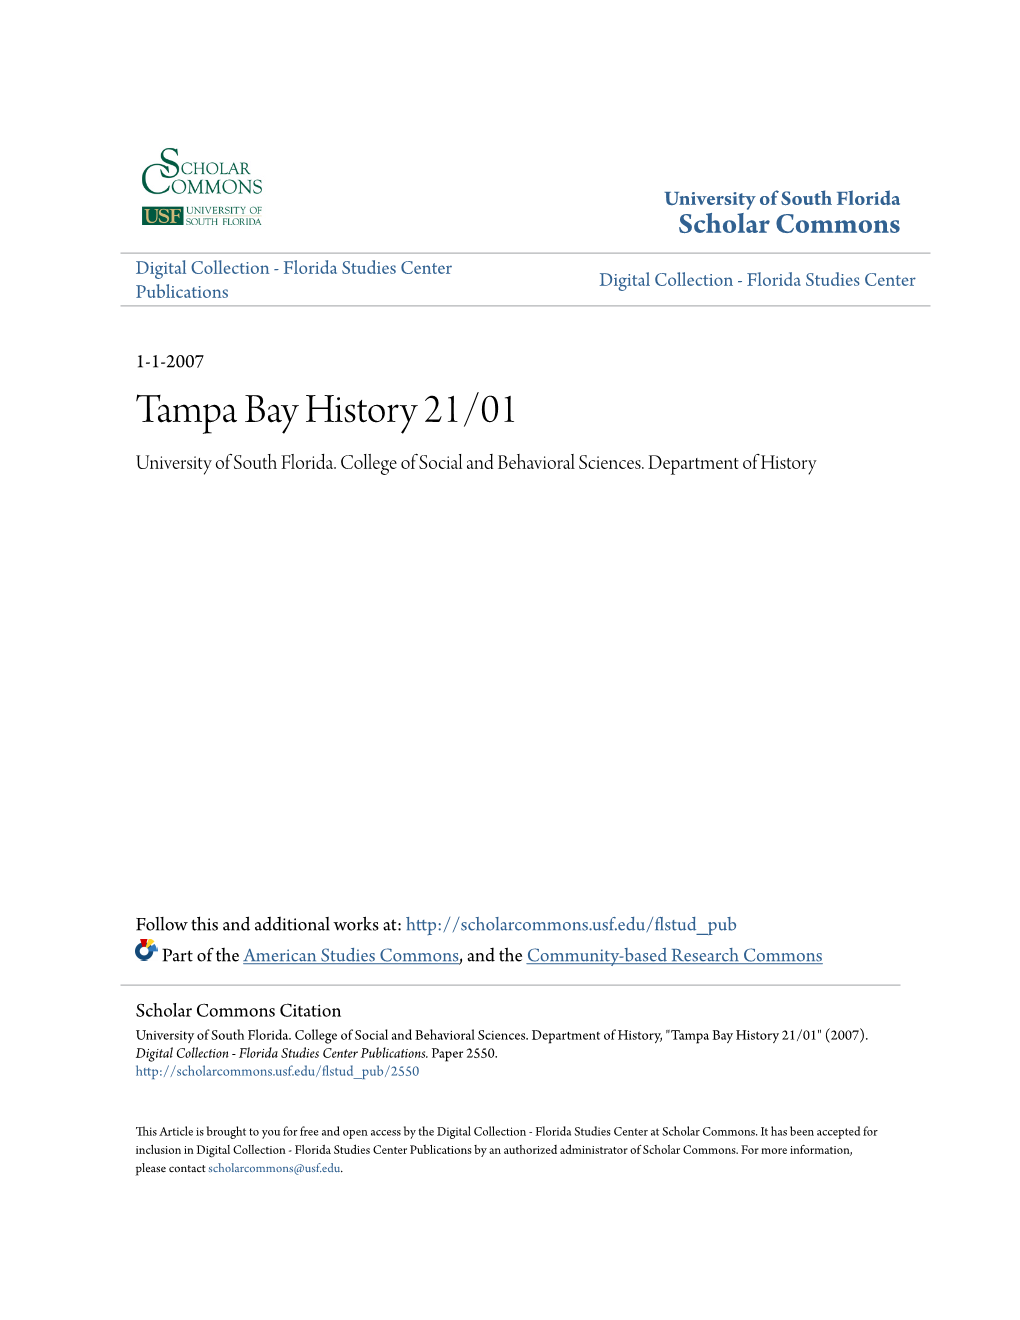 Tampa Bay History 21/01 University of South Florida